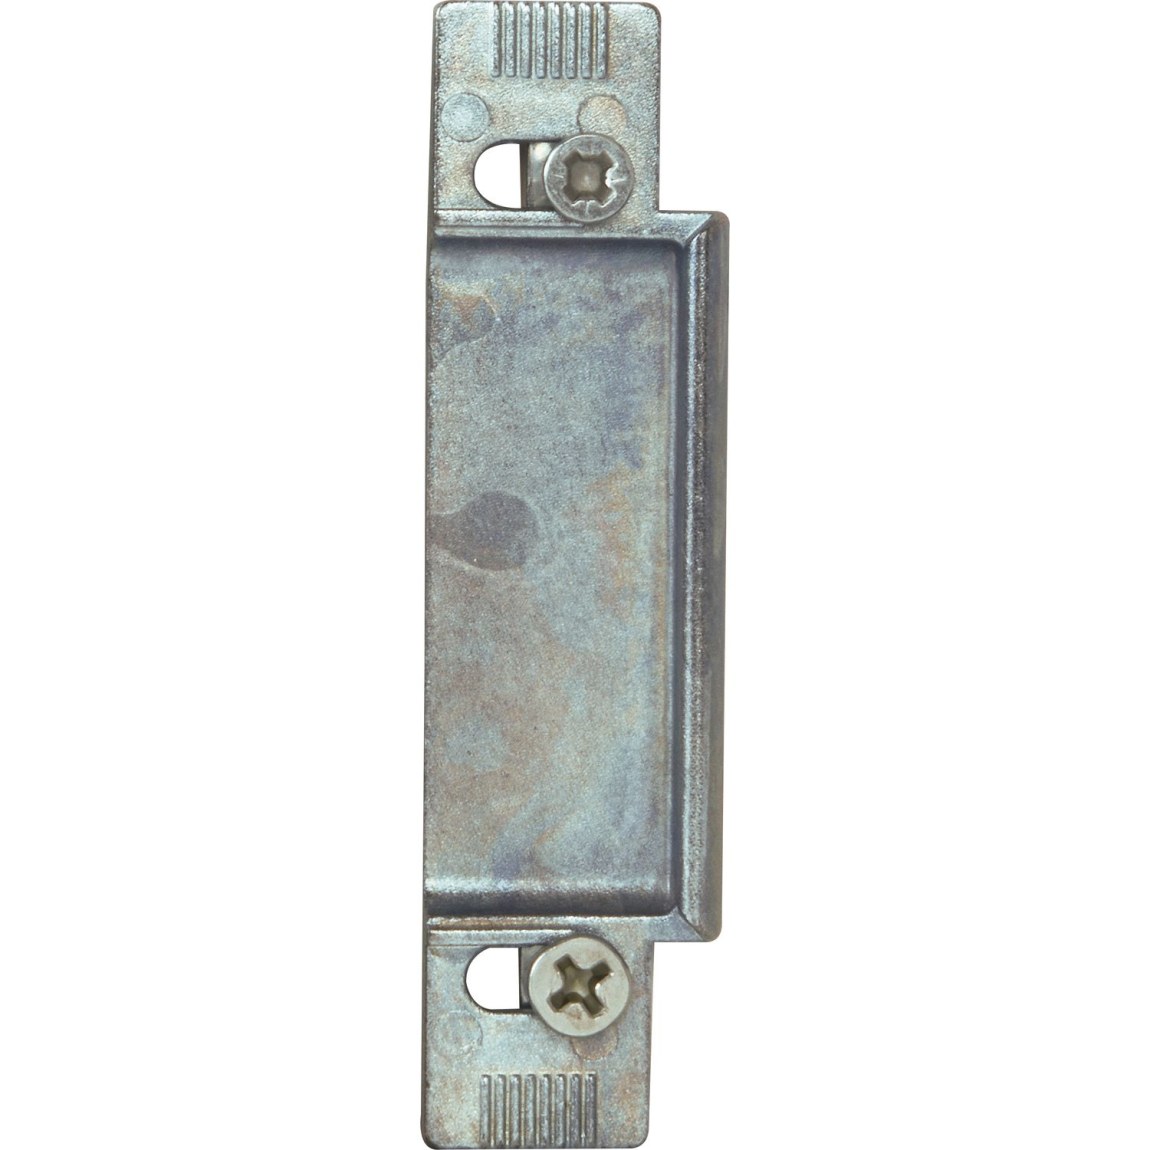 KFV výměnný kus 116, zinkový tlakový odlitek stříbrný, 6 mm - Železářství Zámky Zámky lištové, vícebodové Zámky lištové KFV a příslušenství Protiplechy pro zámky KFV